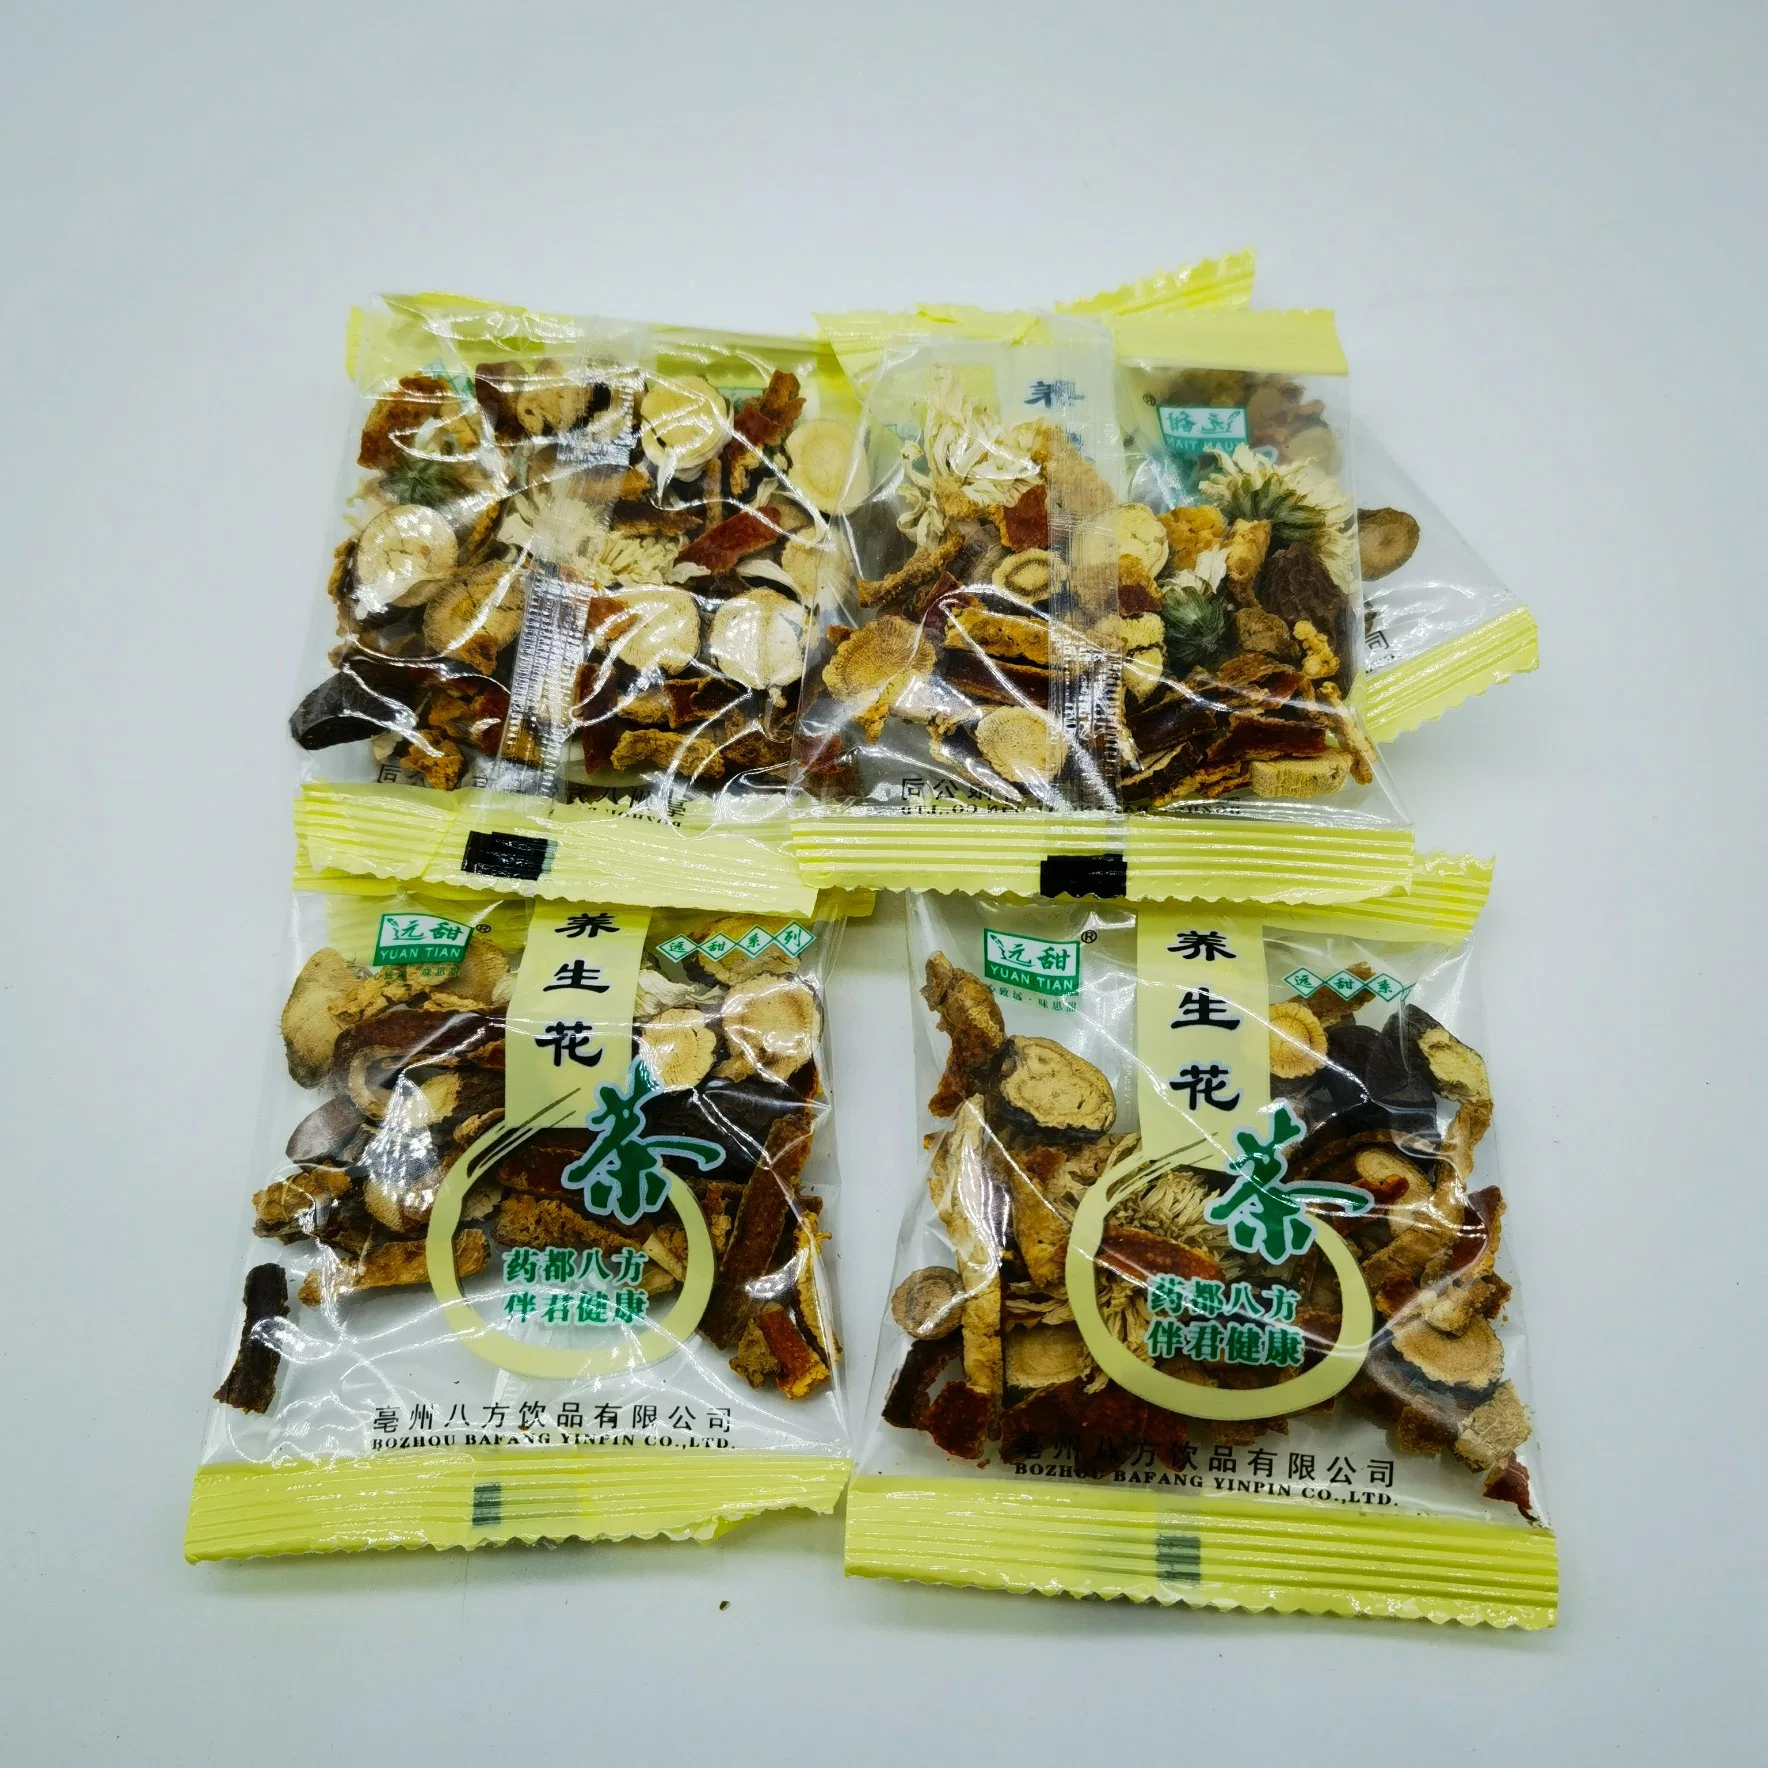 Yang Sheng Cha paquete de regalo chino mezcla de hierbas medicinales té Bolsa para la salud